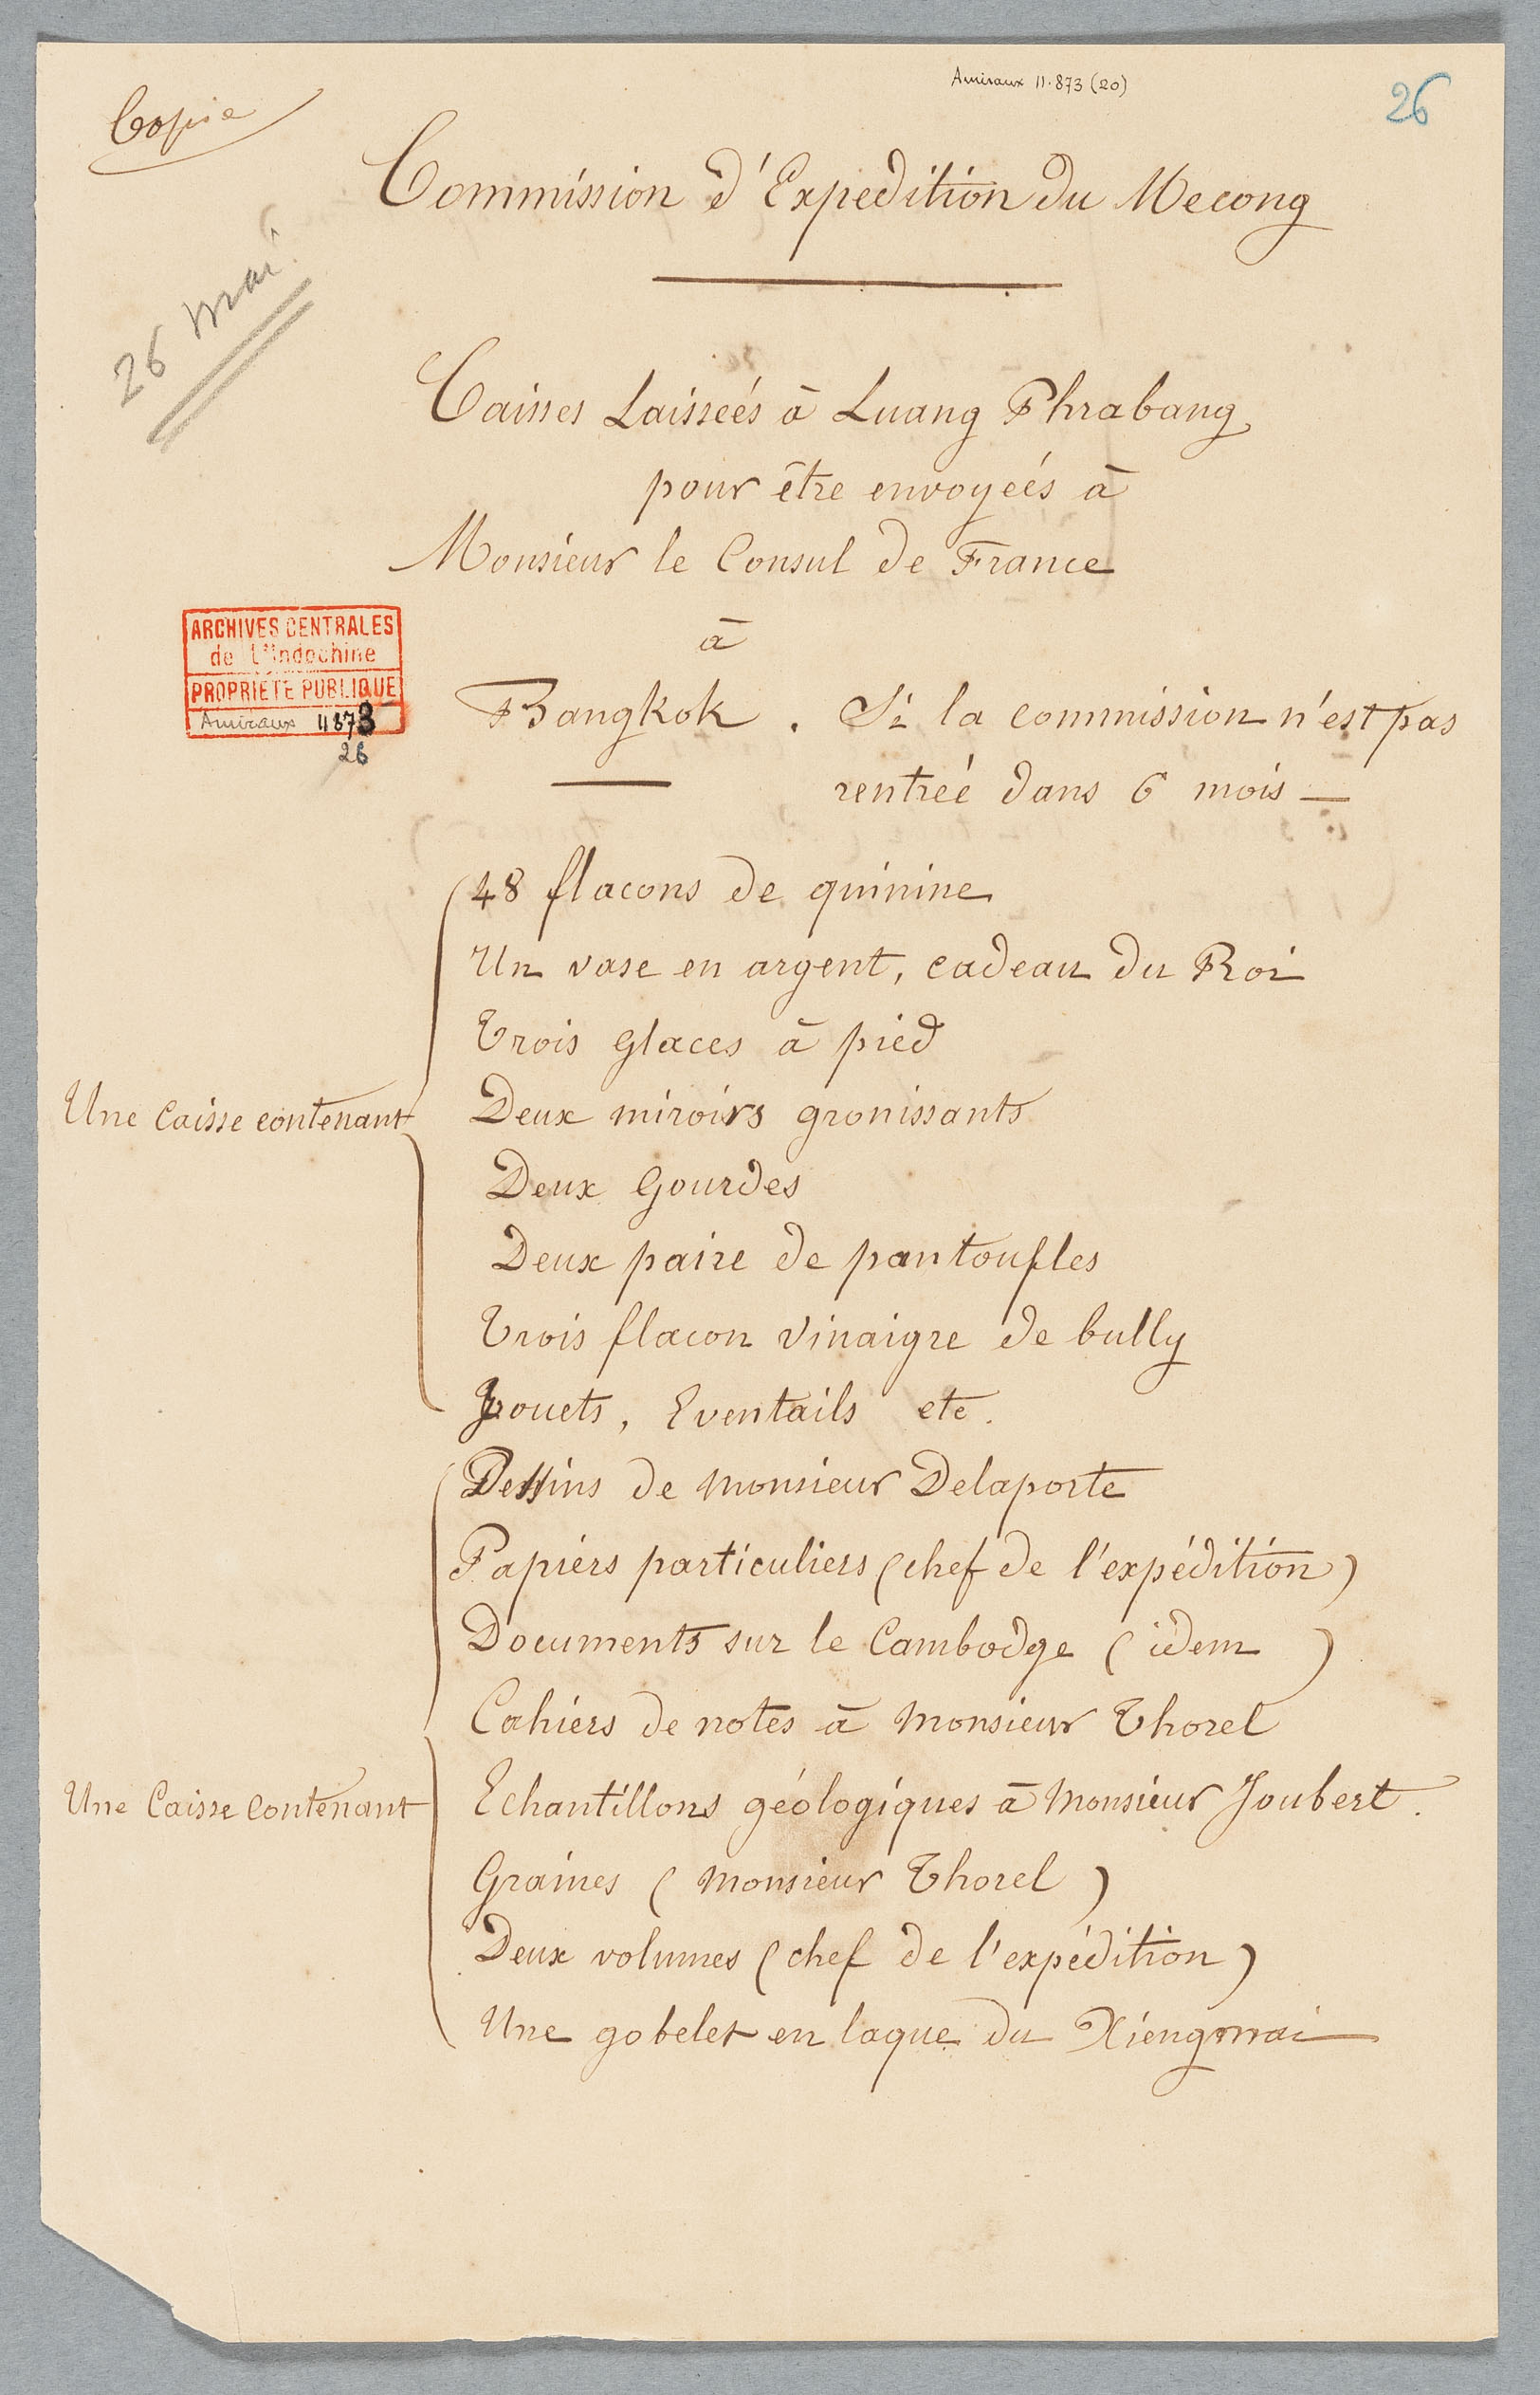 Exploration du Mékong, lettres et rapports de M. Doudart de Lagrée à l’Amiral gouverneur, mai 1867 et janvier 1868